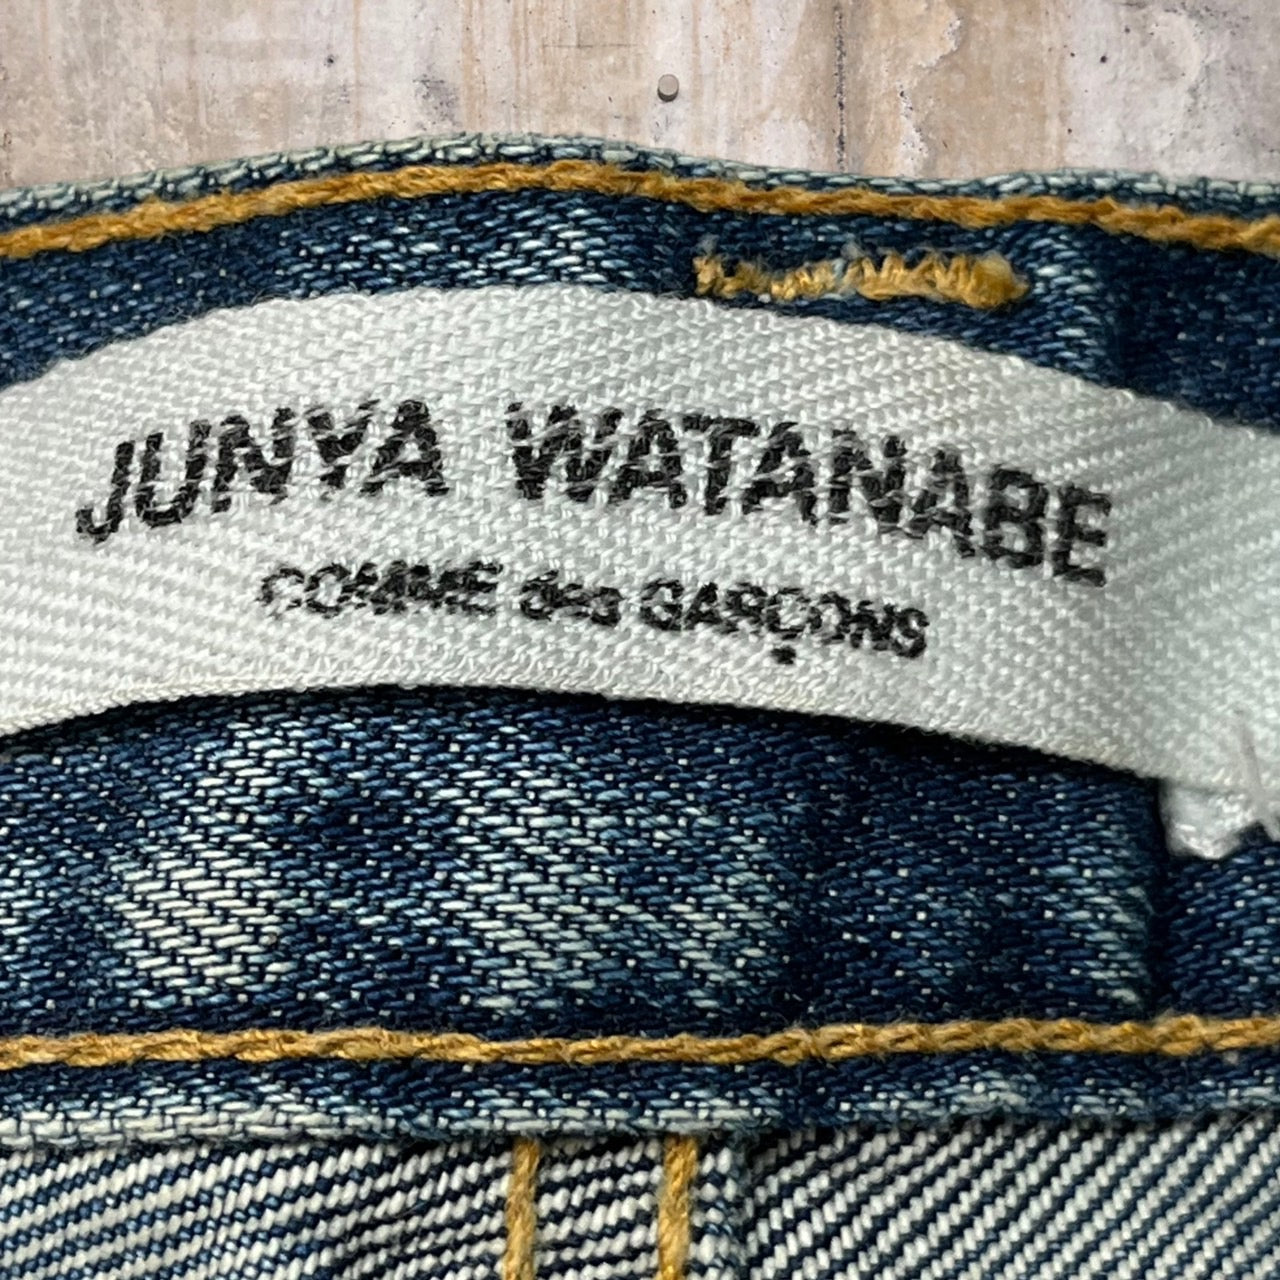 COMME des GARCONS JUNYA WATANABE(コムデギャルソンジュンヤワタナベ) aged straight denim pants/エイジング加工ストレートデニムパンツ M ライトインディゴ 初期